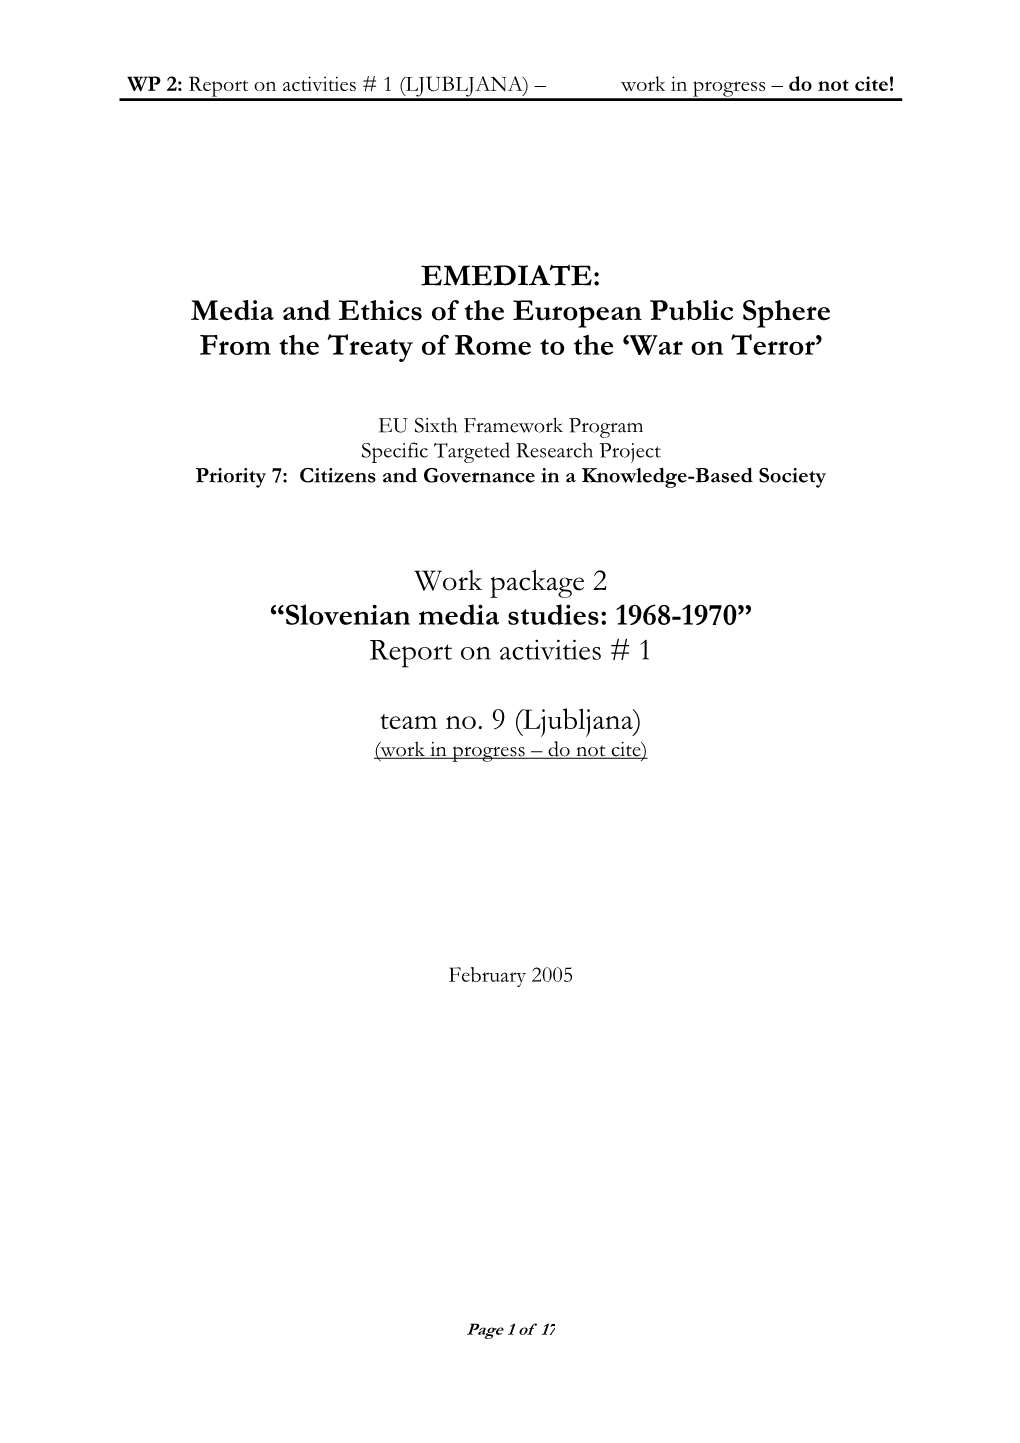 Slovenian Media Studies: 1968-1970” Report on Activities # 1